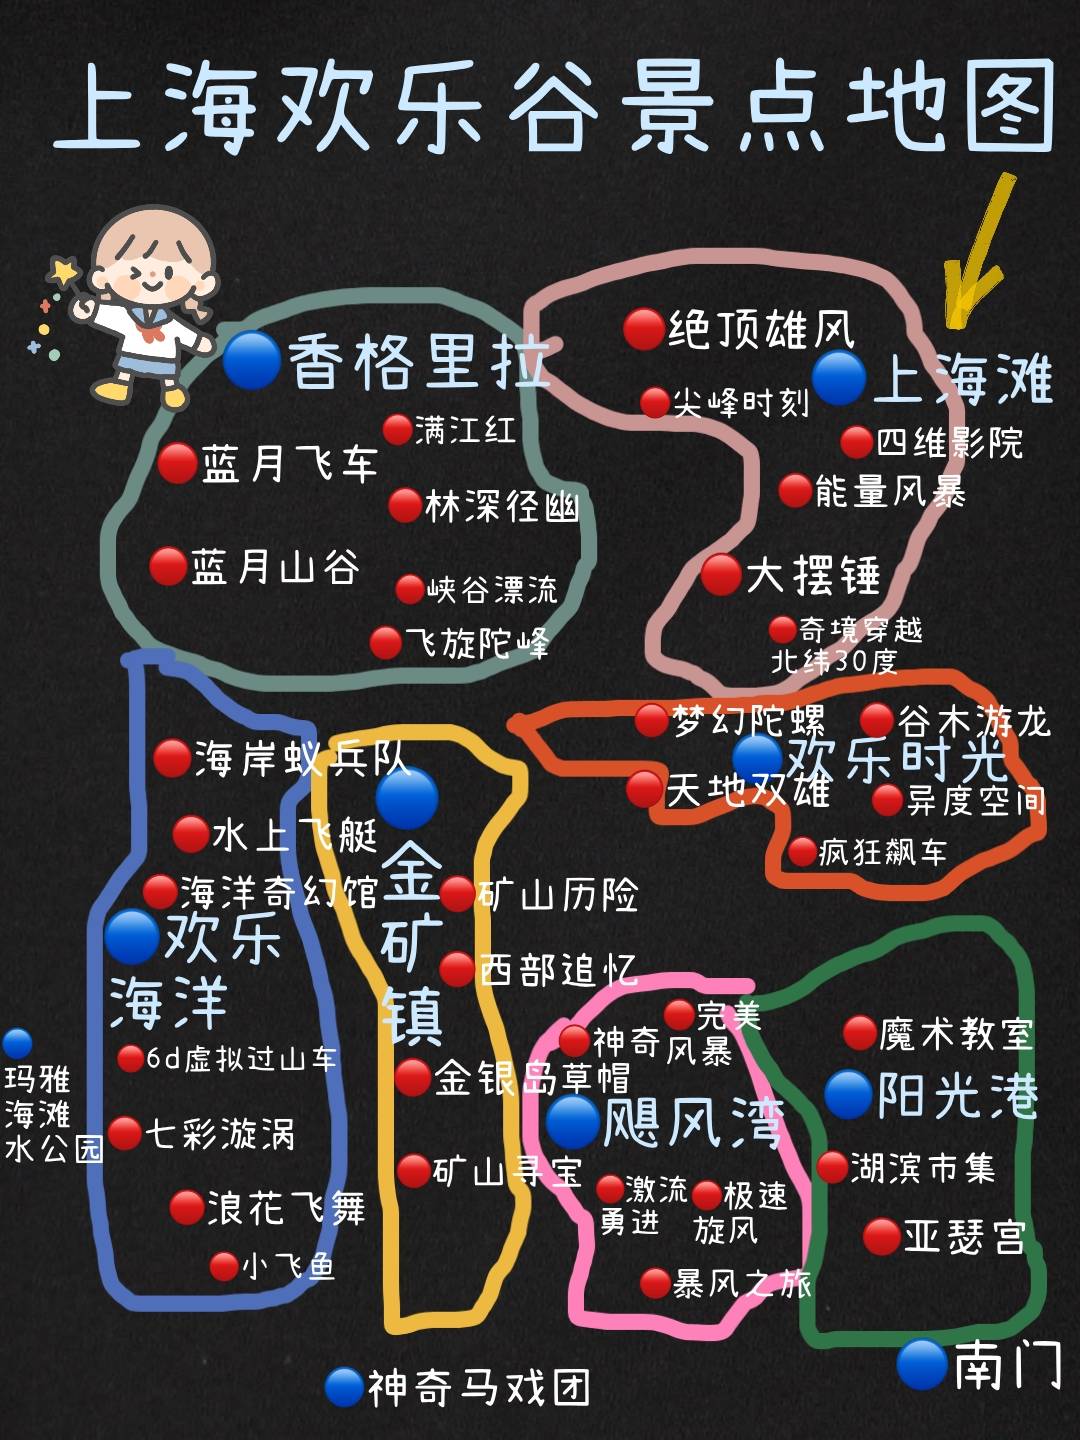 93图1上海欢乐谷游玩地图